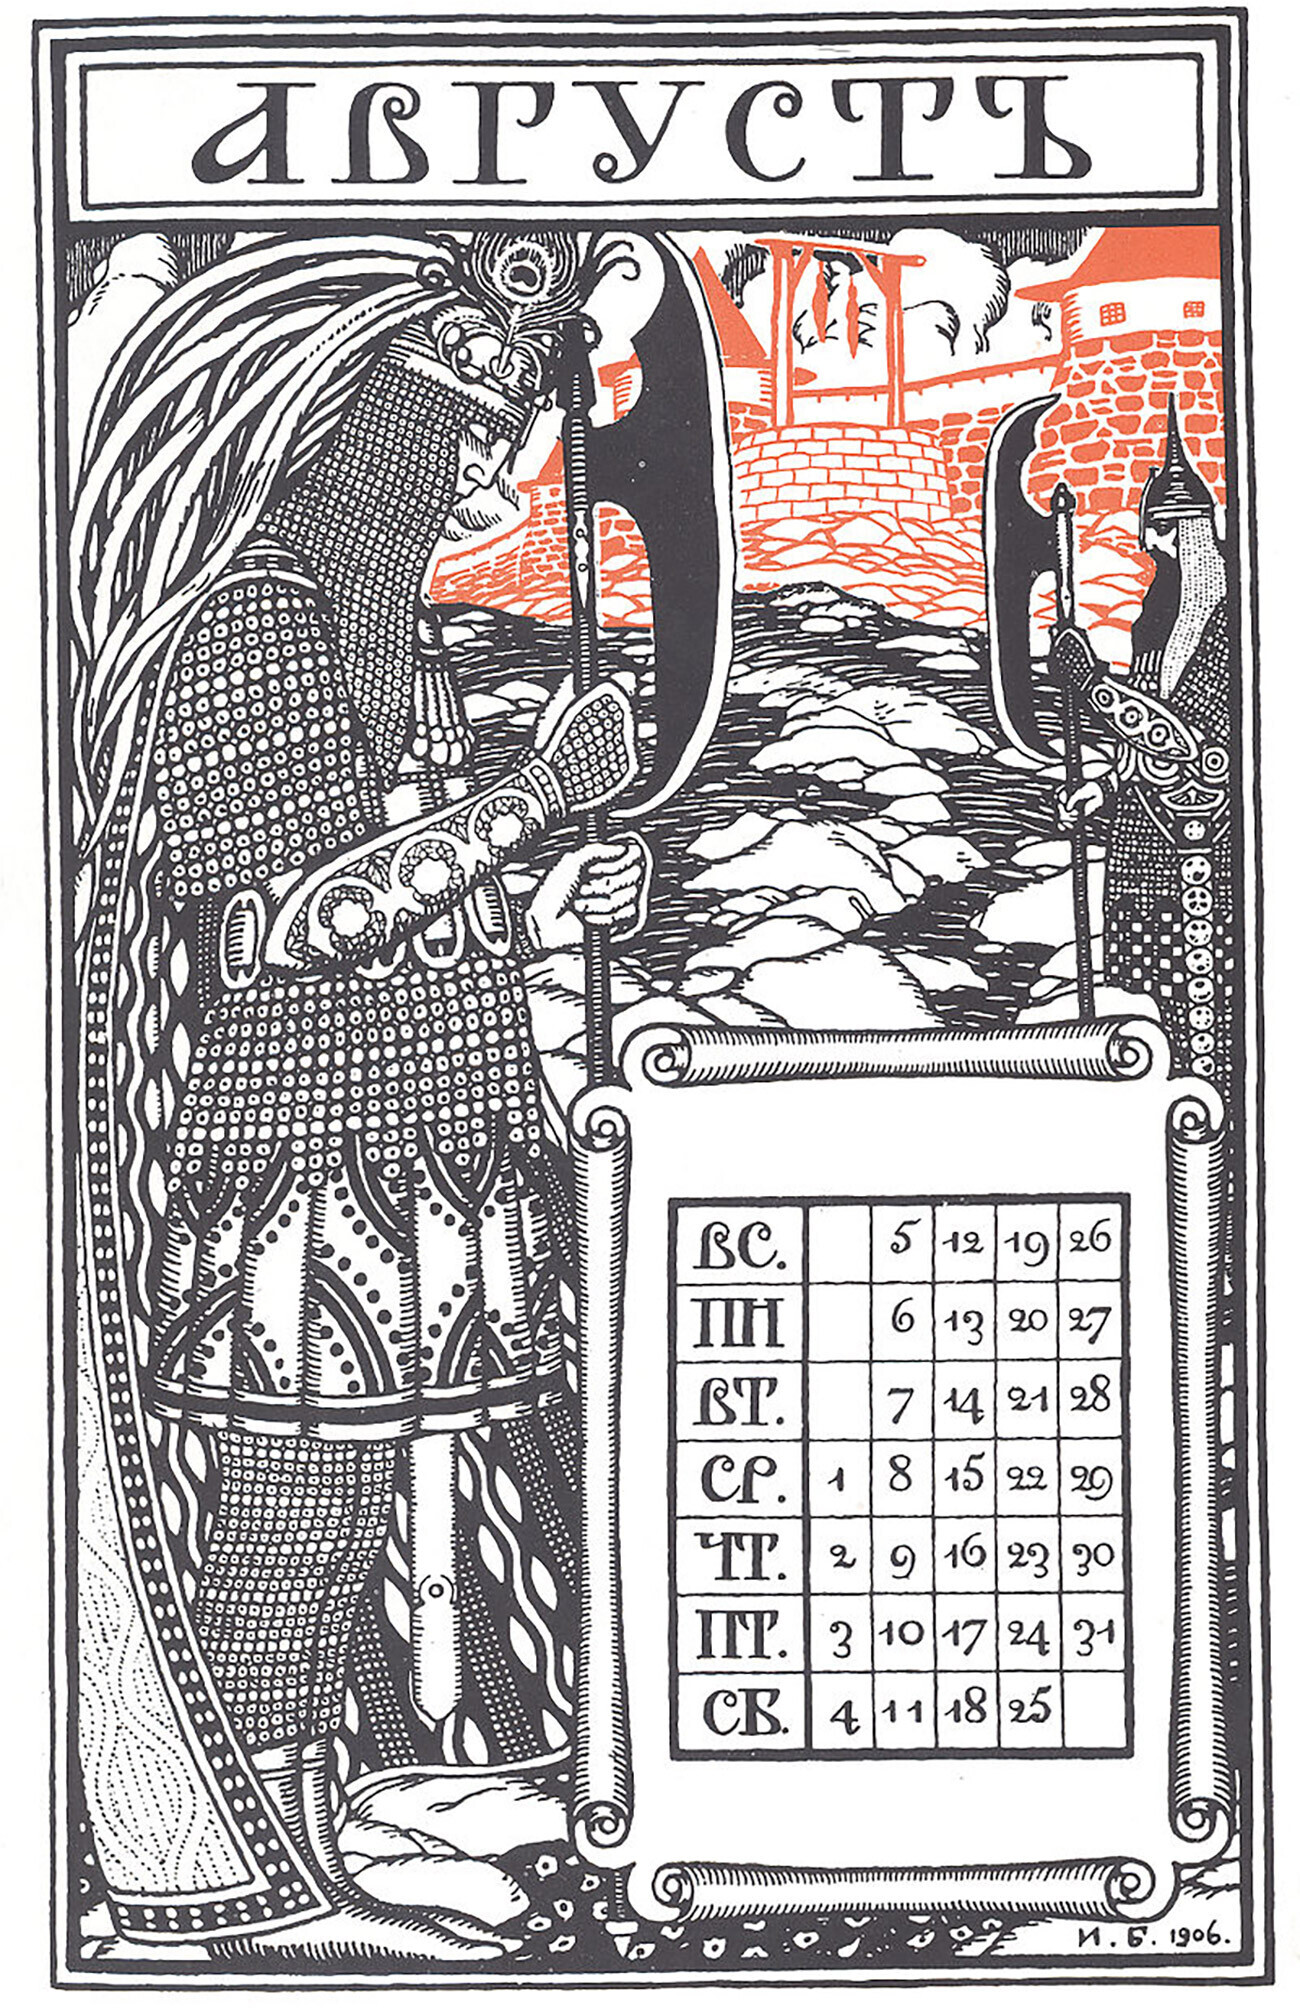 Ruski koledar za avgust 1906, ki ga je oblikoval Ivan Bilibin. Lahko opazite, da se vsi tedni začnejo v 